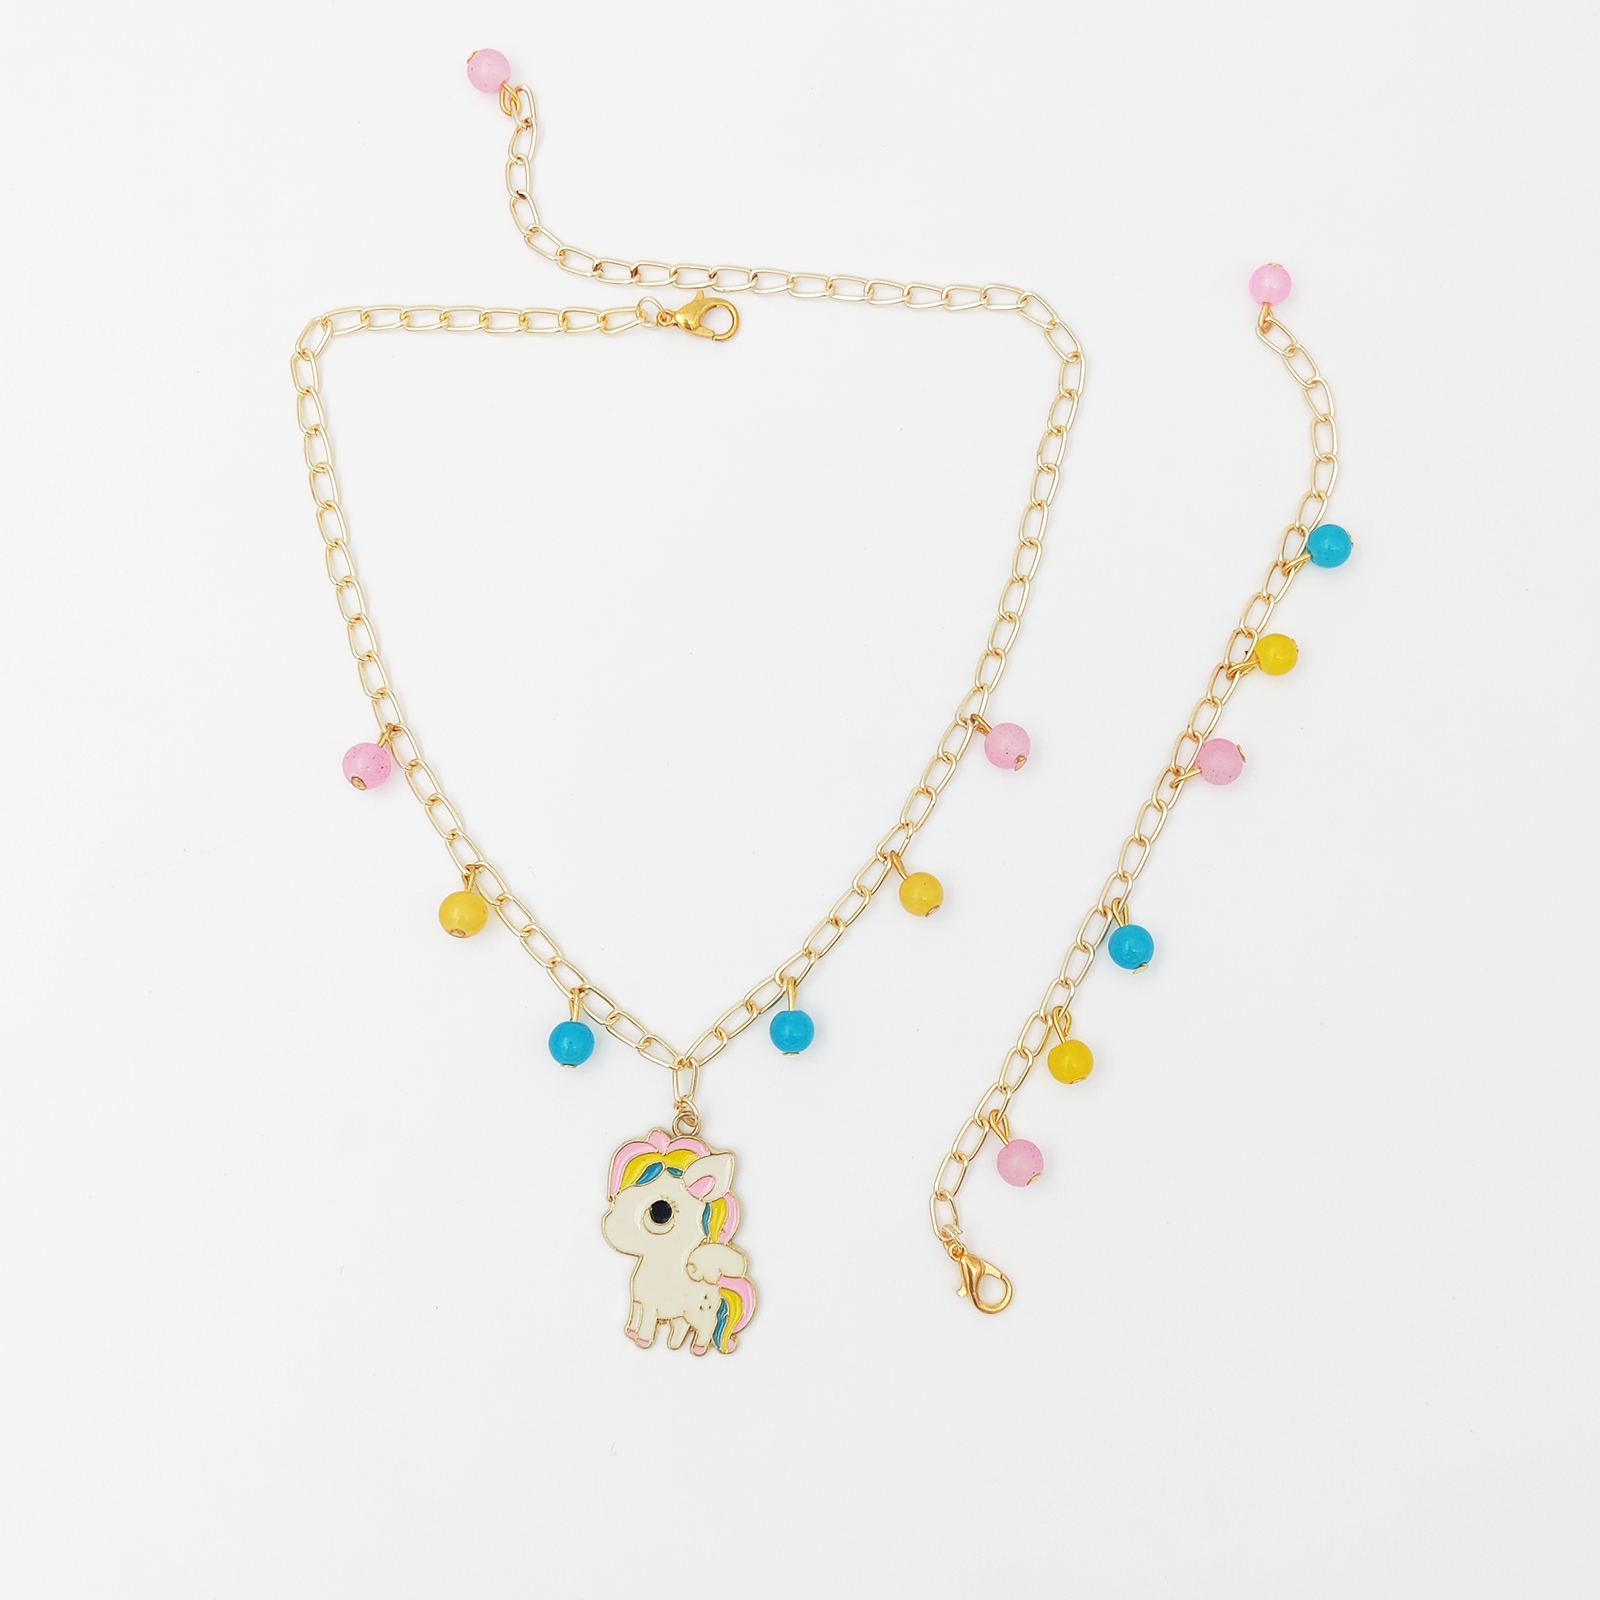 Pony Enameled Charm Necklace & Beaded Bracelet Set Pink, Yellow, Blue